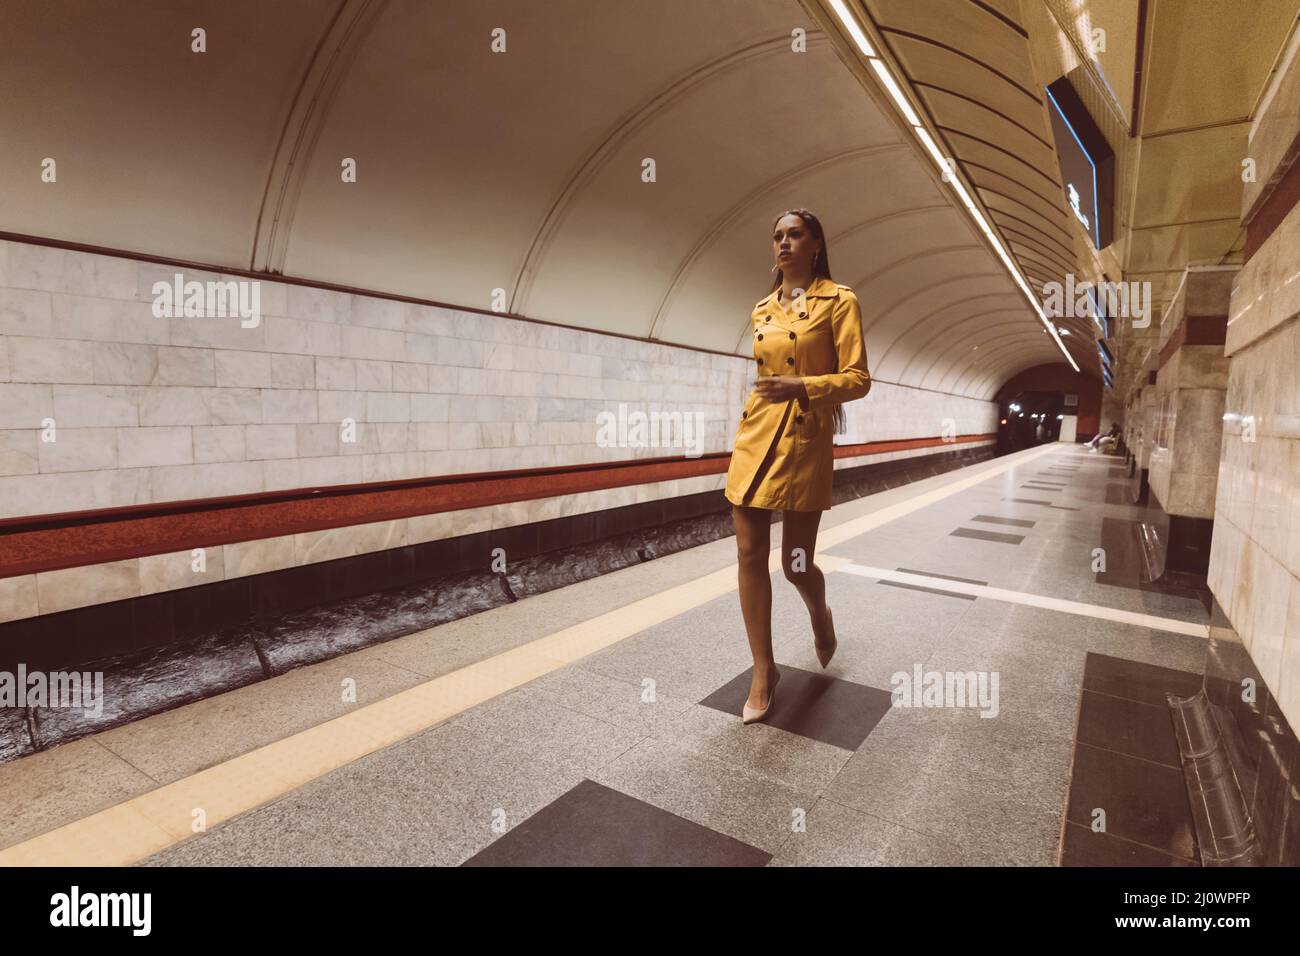 Camminando sulla piattaforma della metropolitana bella ragazza giovane con le gambe lunghe in un cappotto di primavera giallo e una borsa bianca in mano. Foto Stock